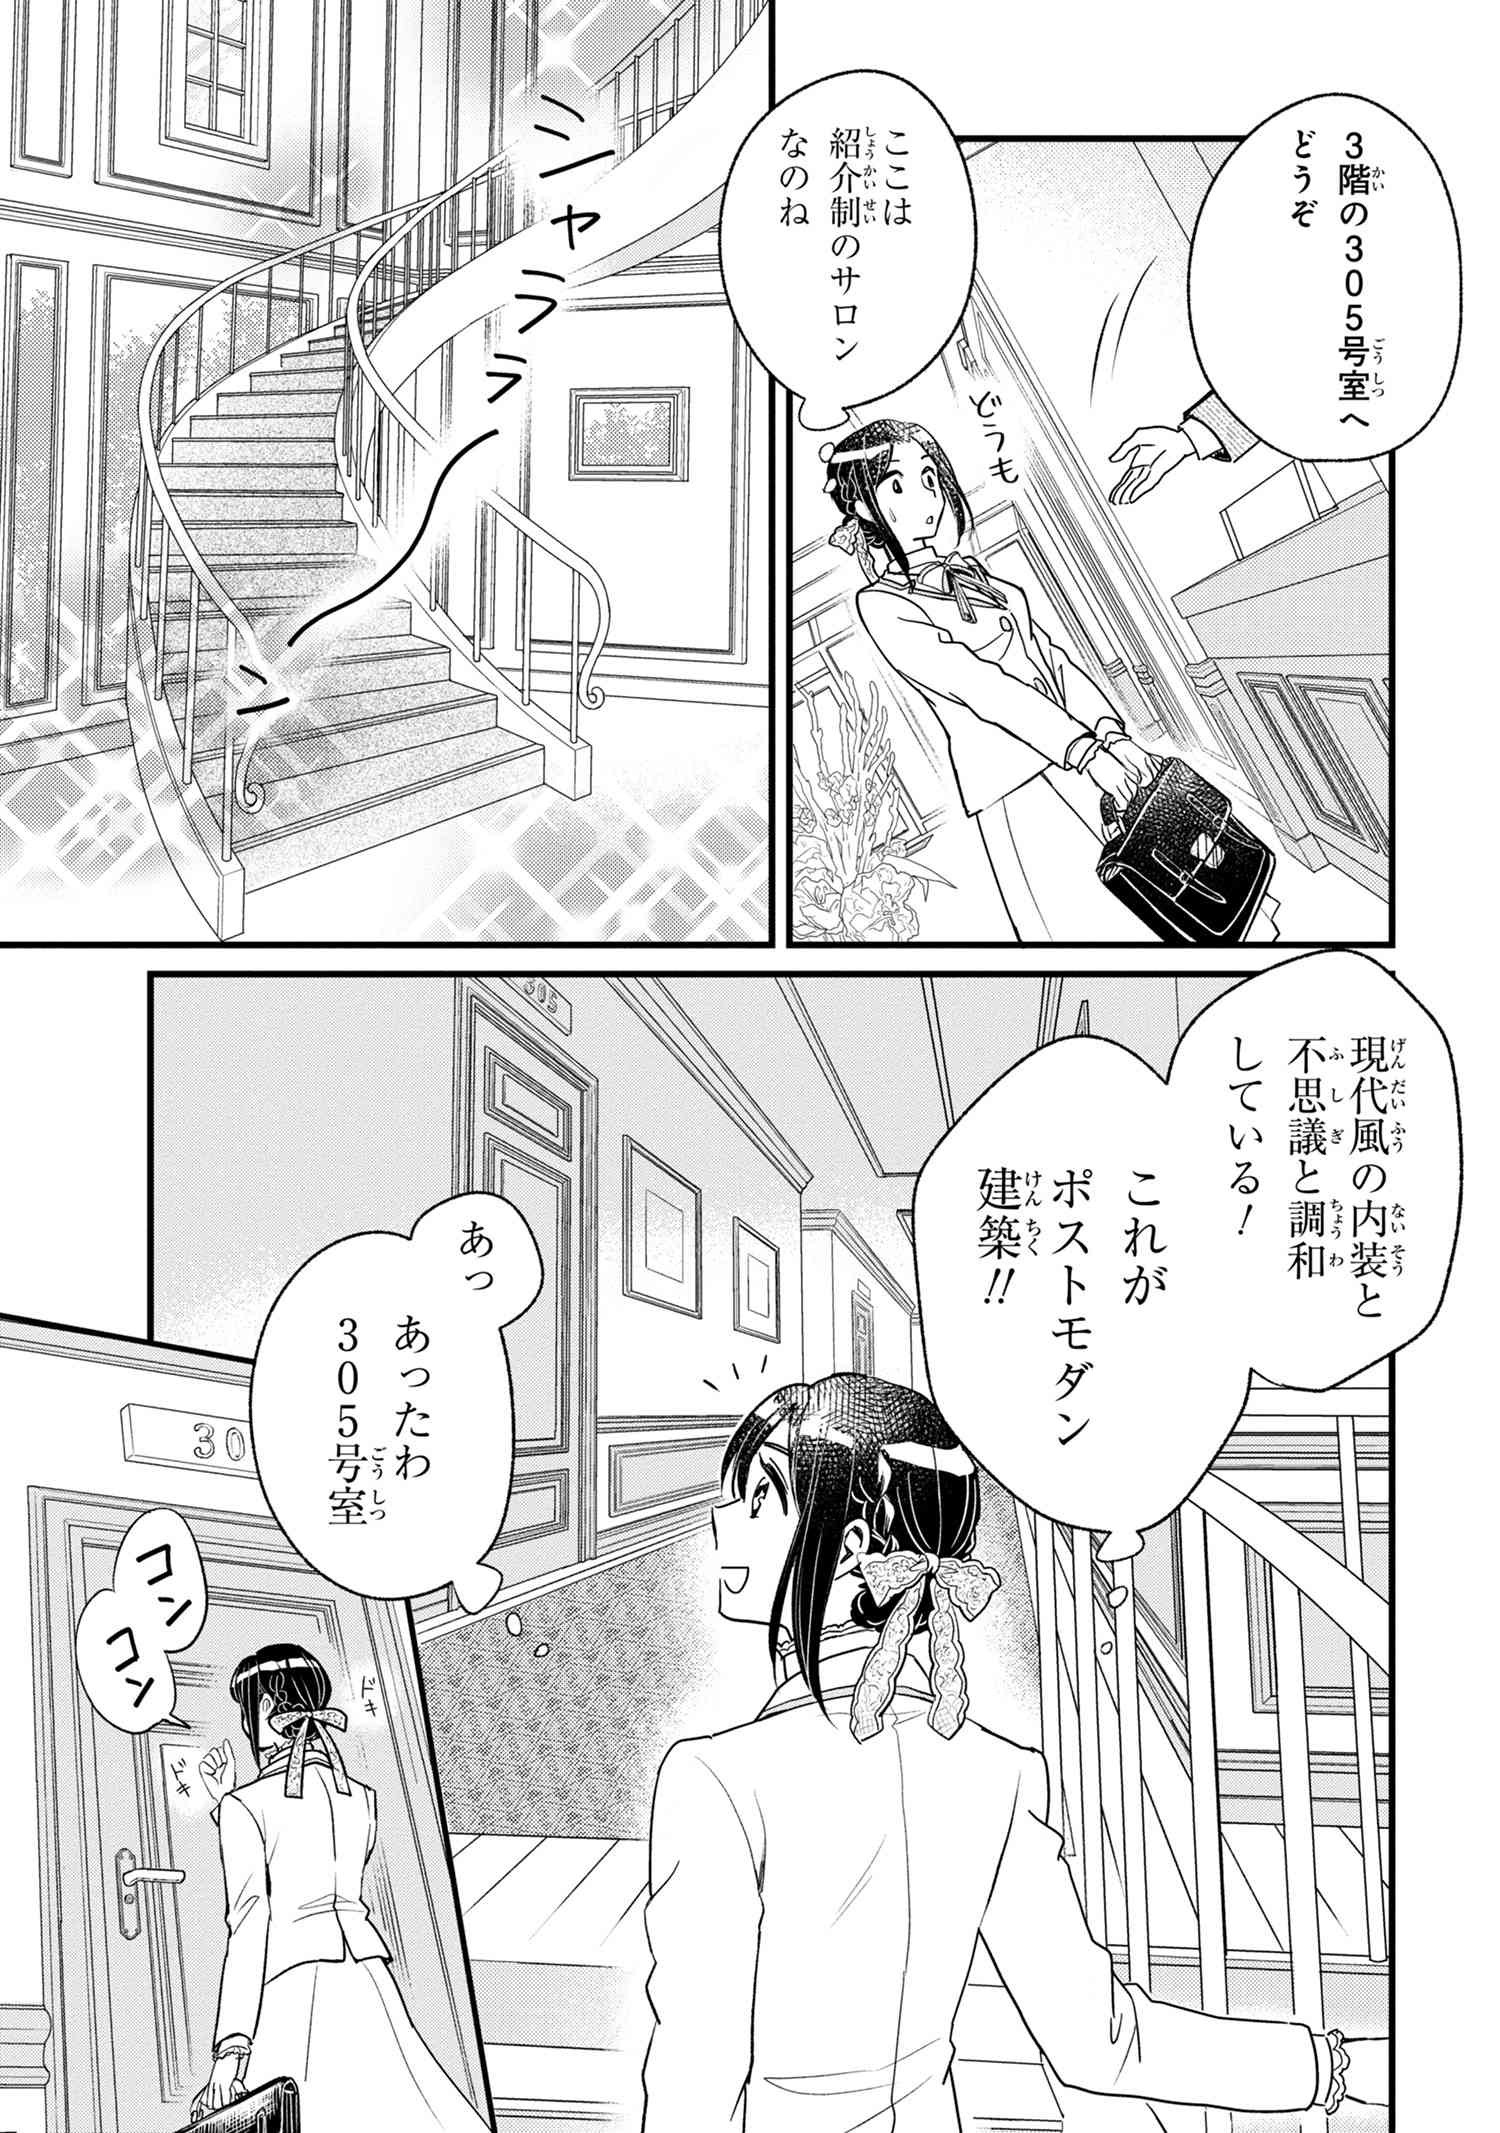 Reiko no Fuugi Akuyaku Reijou to Yobarete imasu ga, tada no Binbou Musume desu - Chapter 2-1 - Page 17